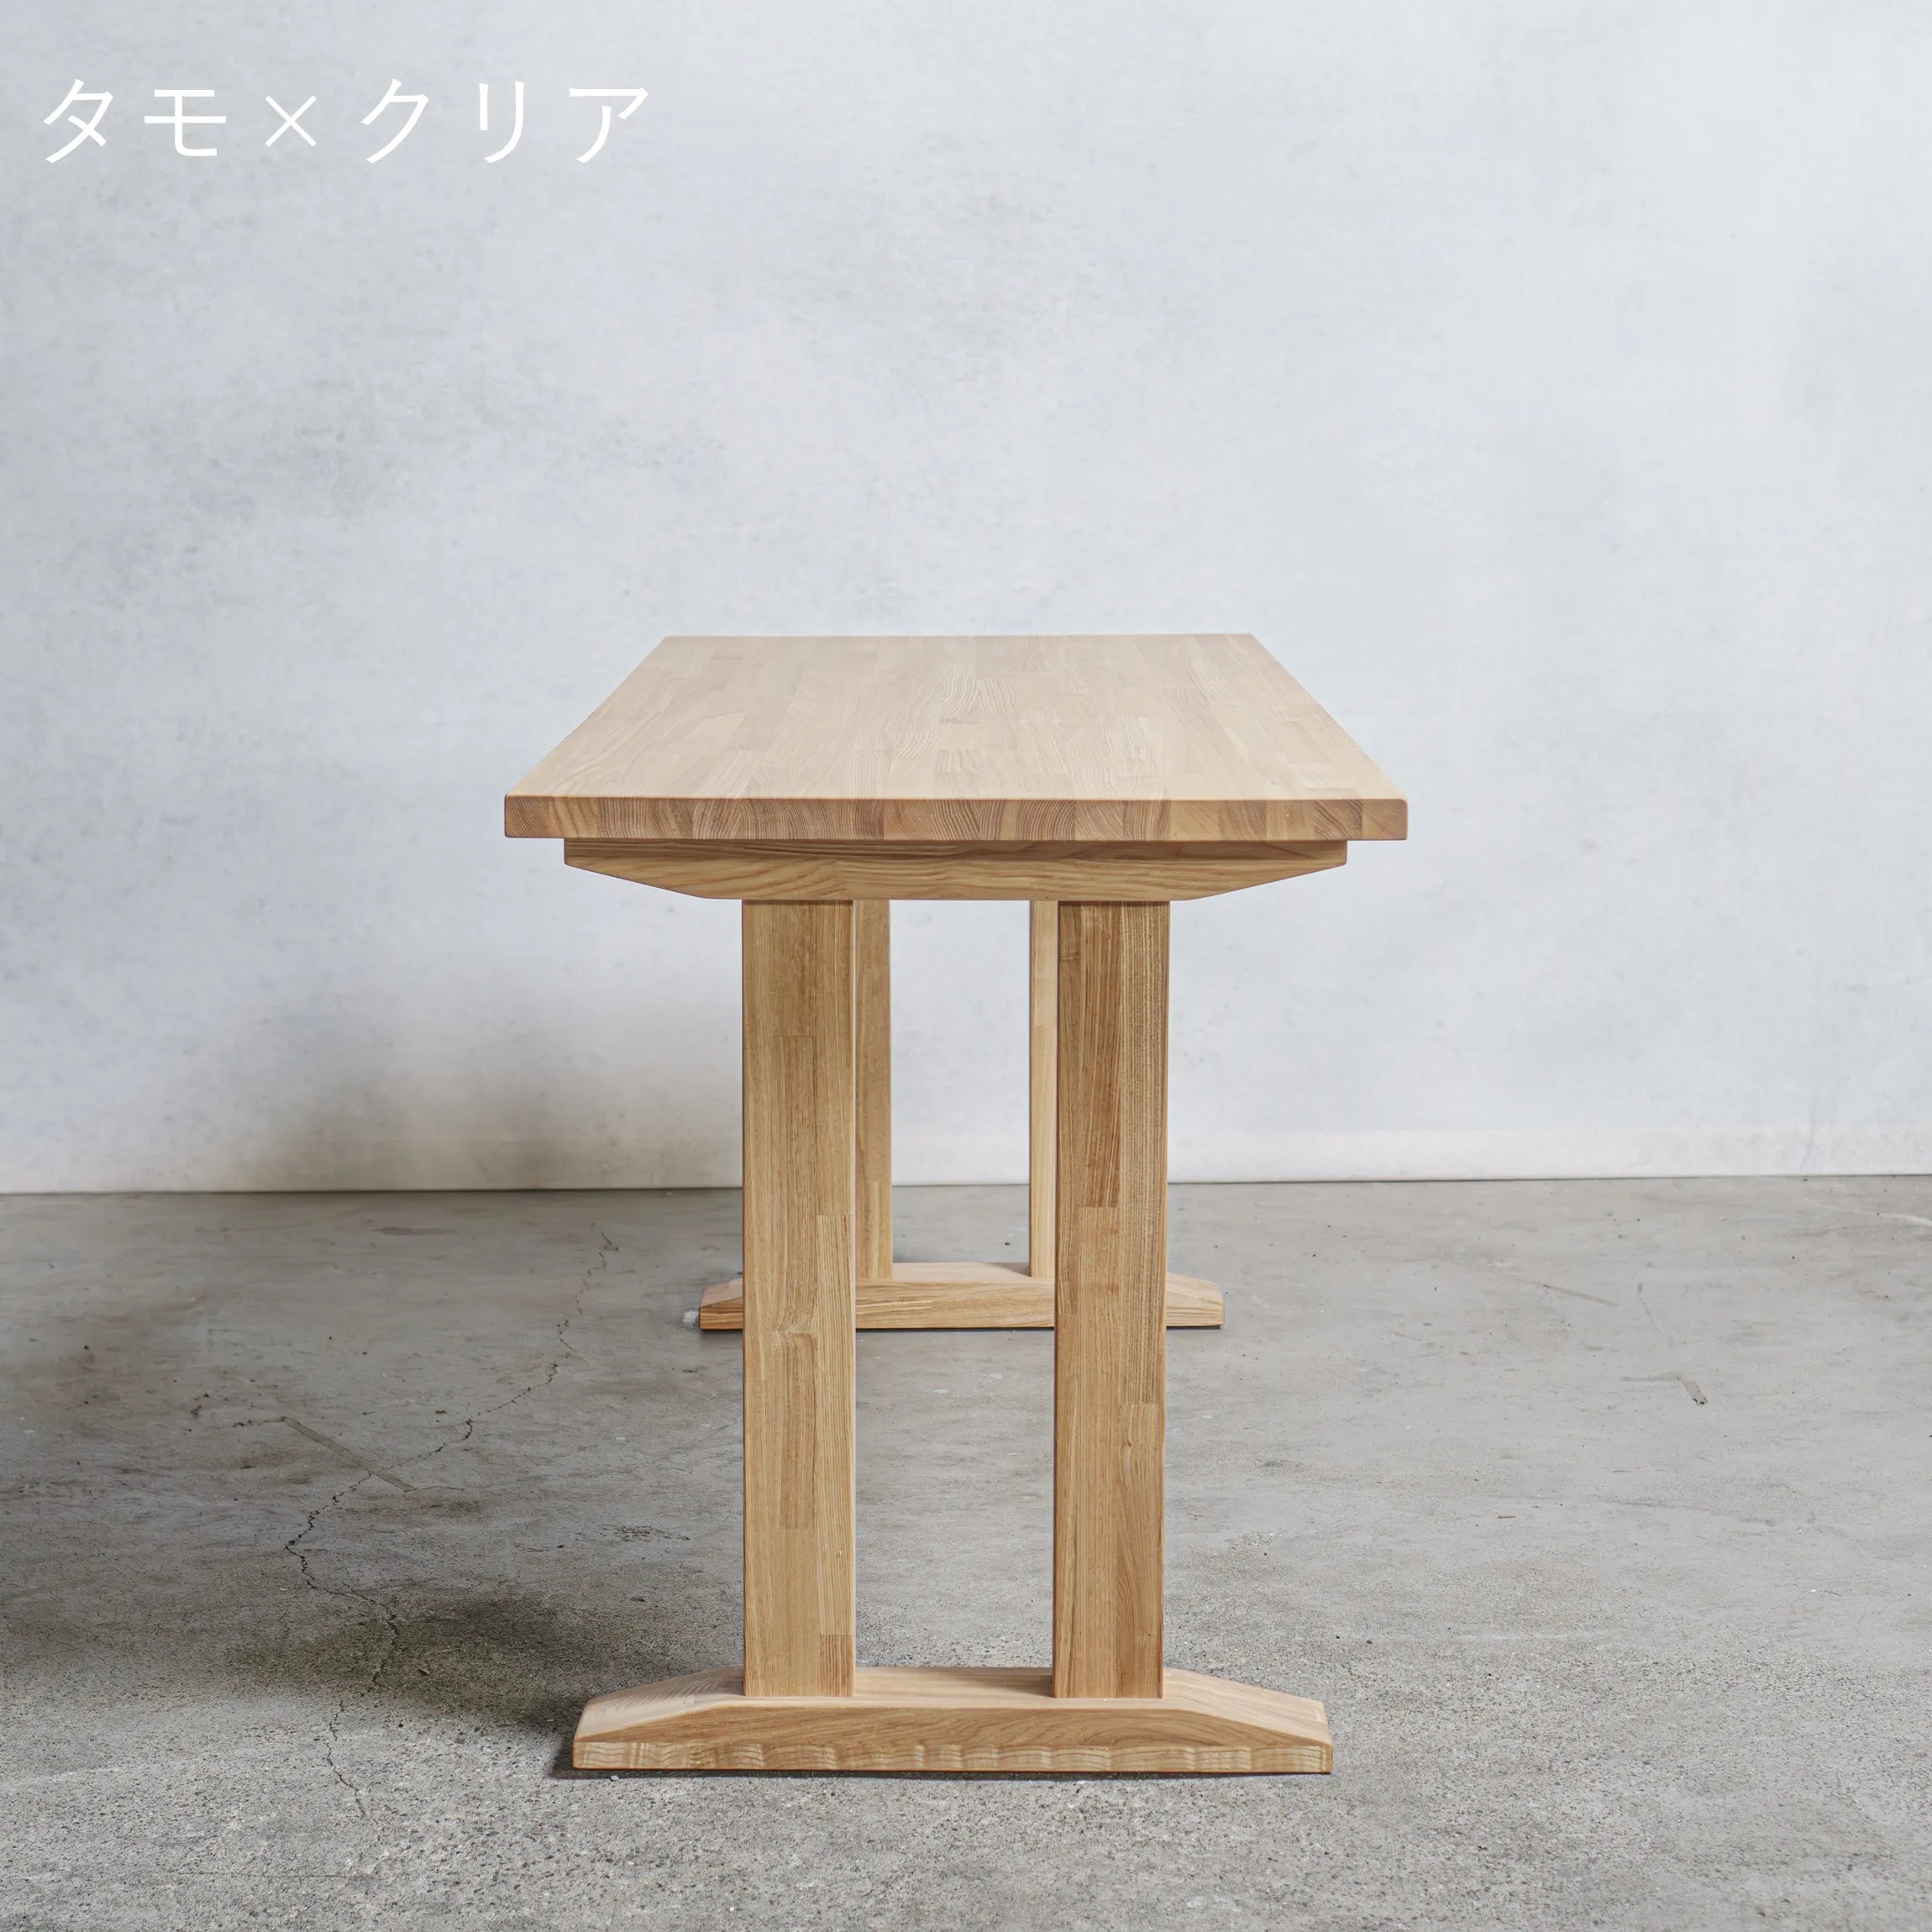 木製 オーダー テーブル / デスク  タモ材 Ⅱ型